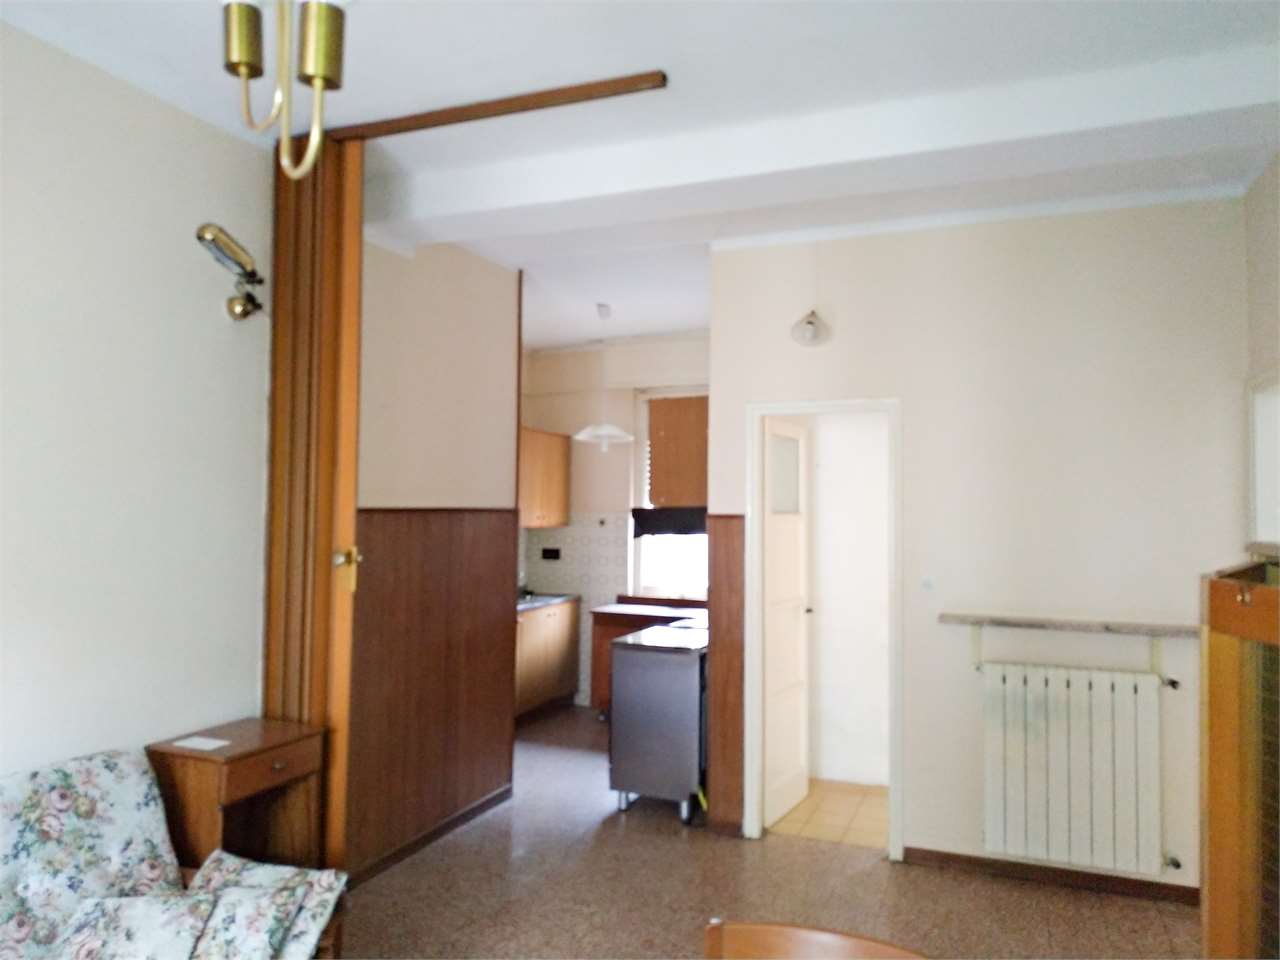 Appartamento in vendita a Omegna, 3 locali, prezzo € 47.000 | CambioCasa.it